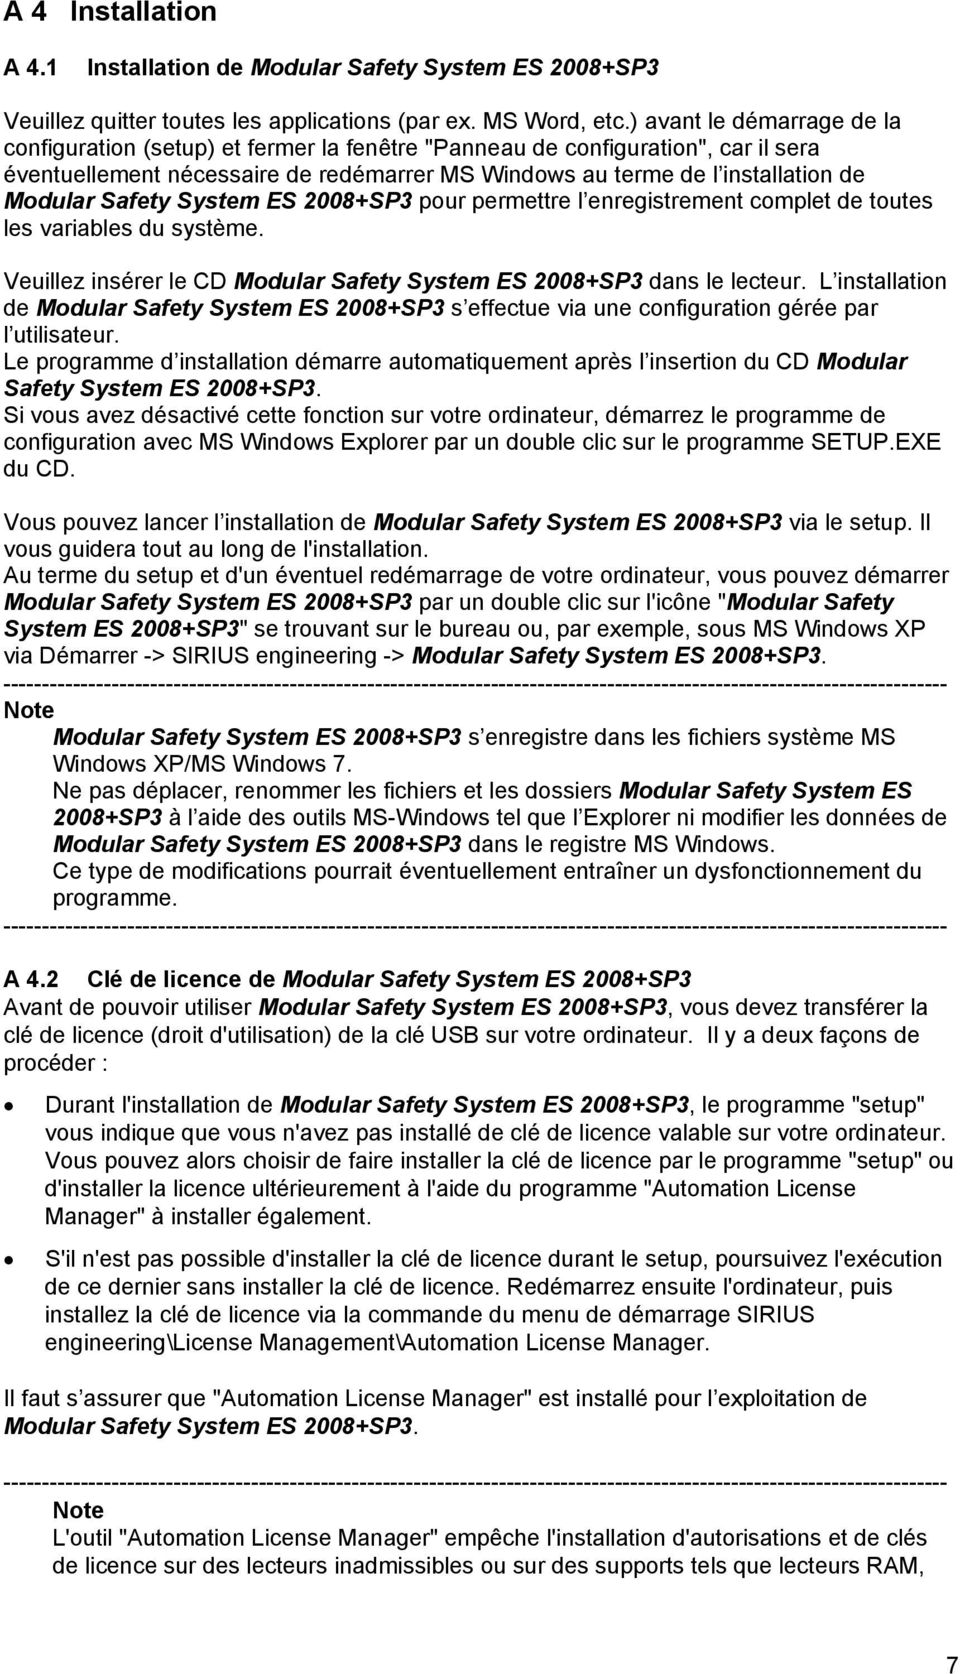 Safety System ES 2008+SP3 pour permettre l enregistrement complet de toutes les variables du système. Veuillez insérer le CD Modular Safety System ES 2008+SP3 dans le lecteur.